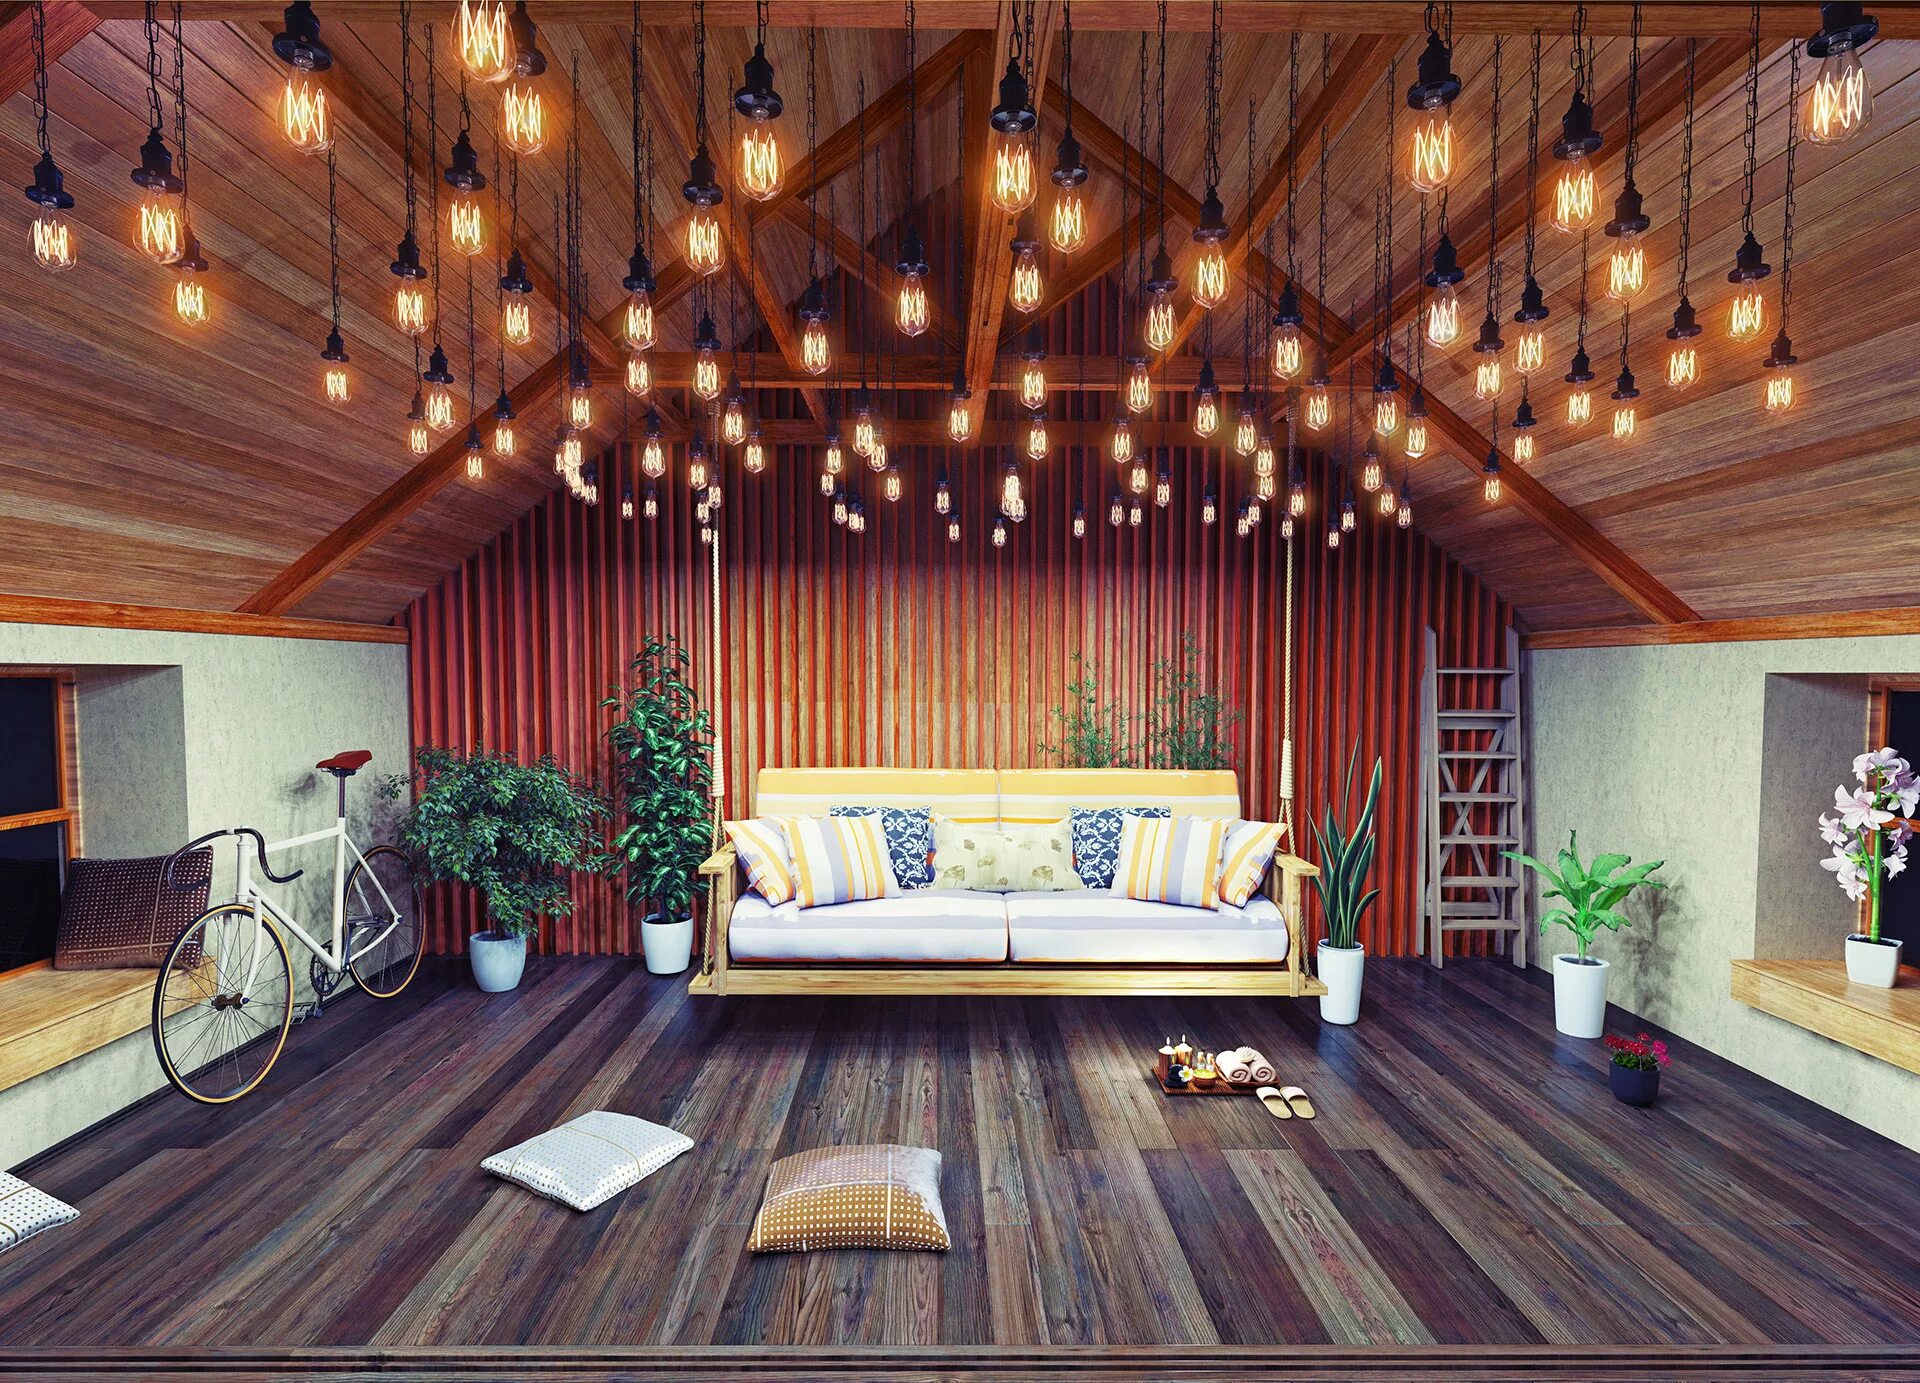 Свет в комнате на даче. Освещение в доме. Точечные светильники в деревянном доме. Деревянный потолок. Освещение на деревянном потолке.